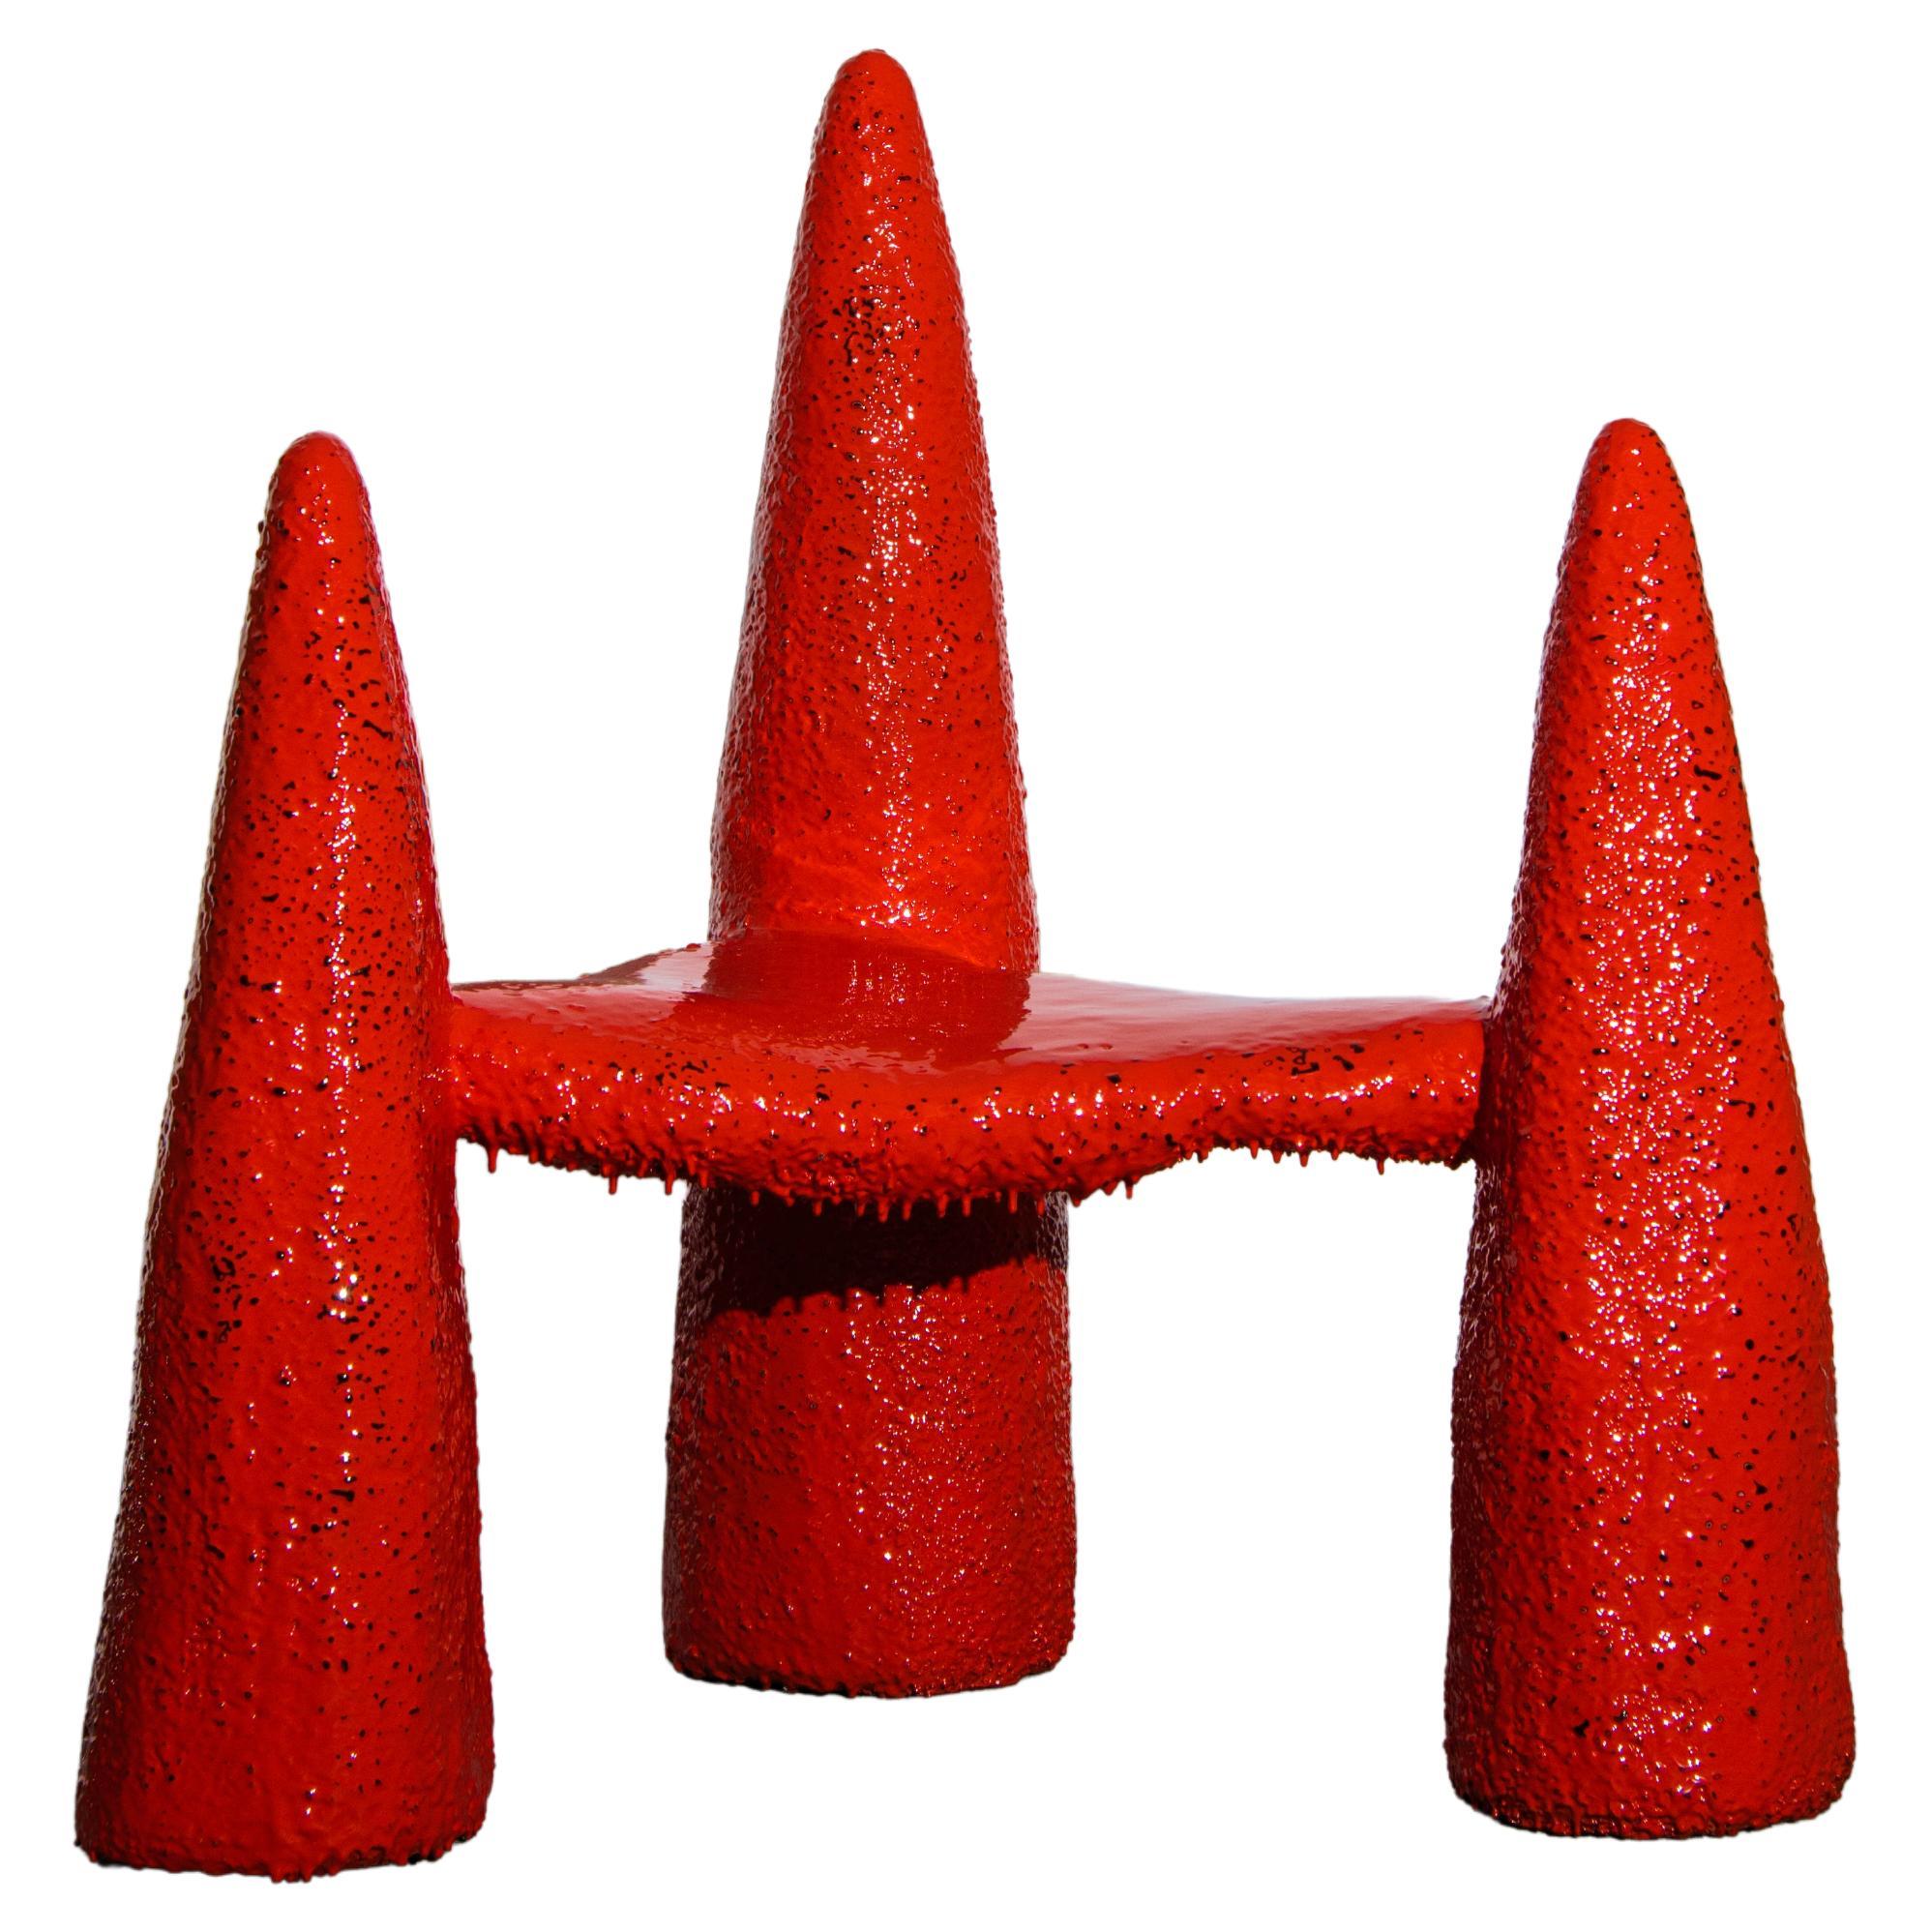 Red-Orange Del Cielo Y La TIerra Chair by Alberto Vitelio